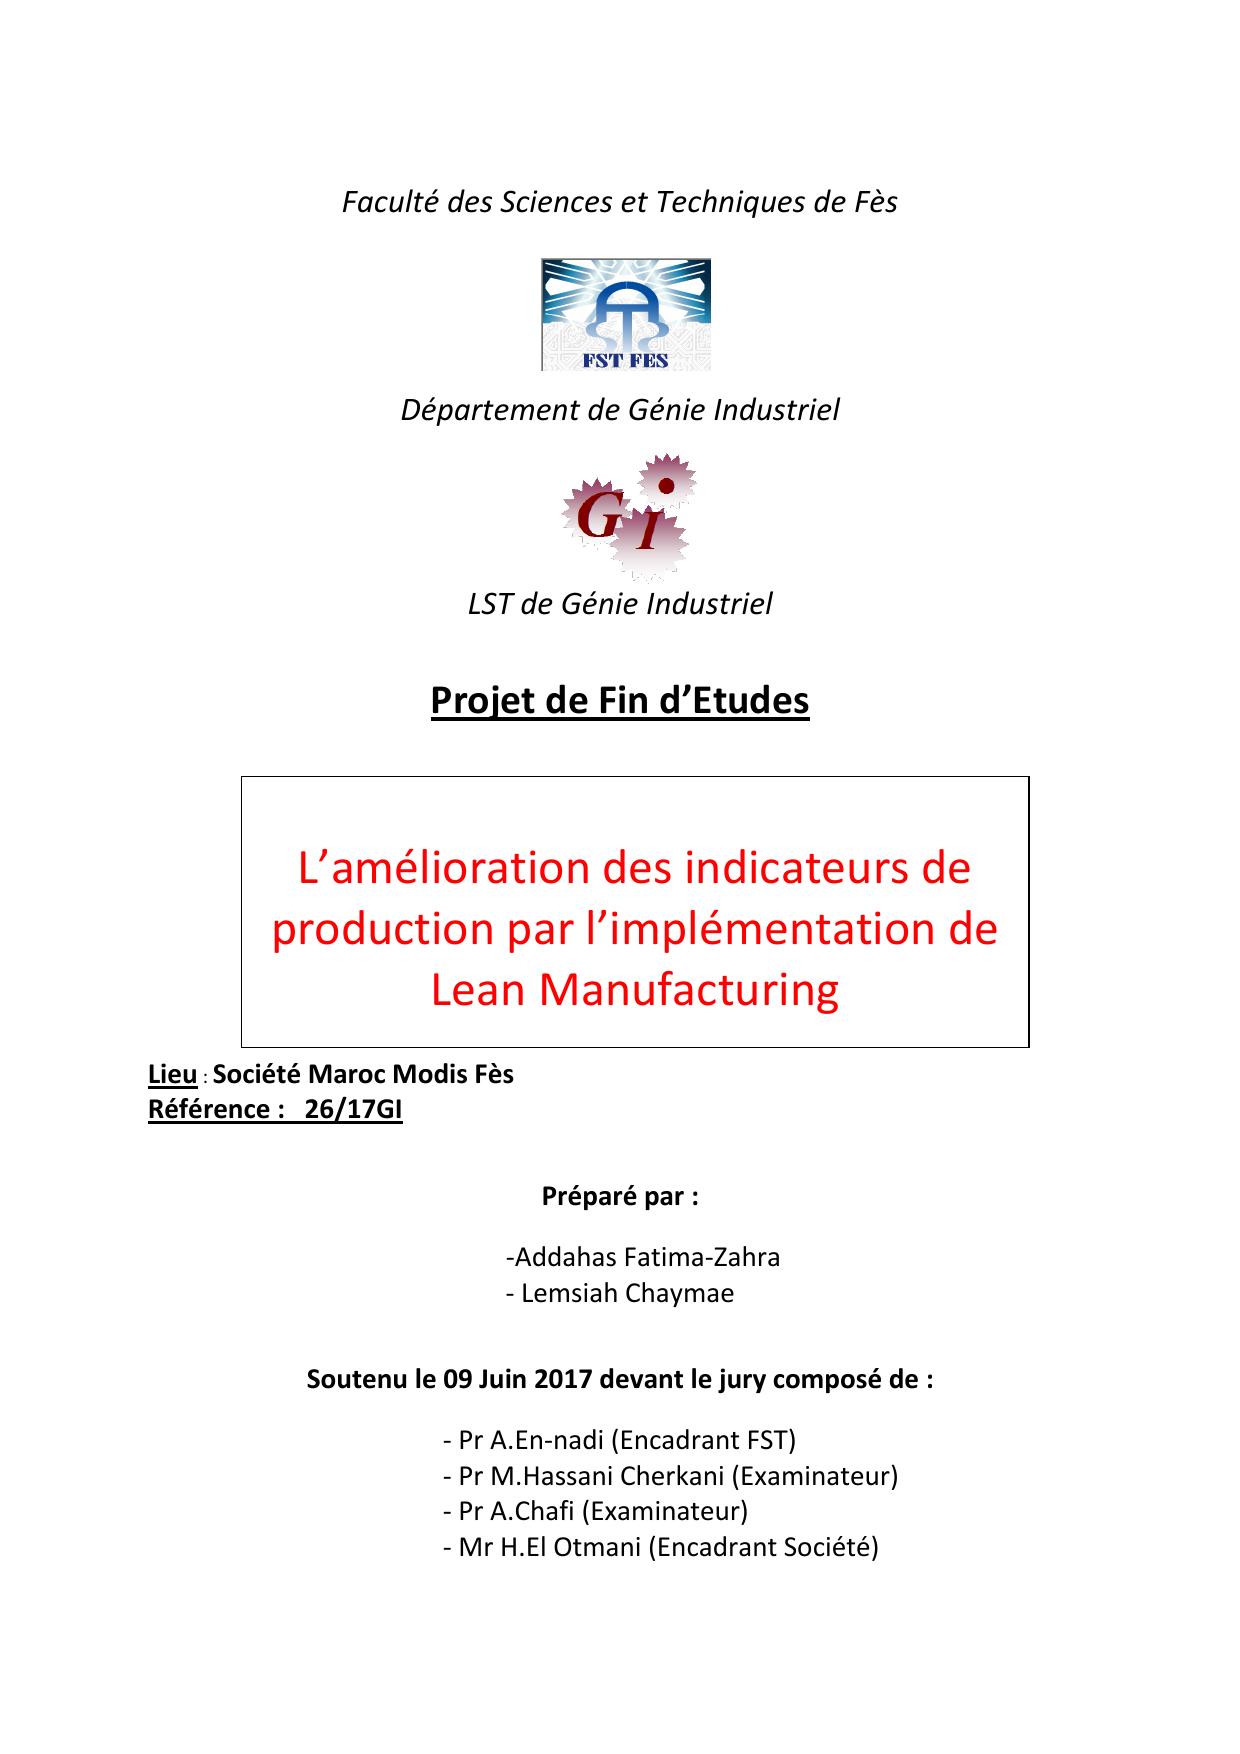 L’amélioration des indicateurs de production par l’implémentation de Lean Manufacturing